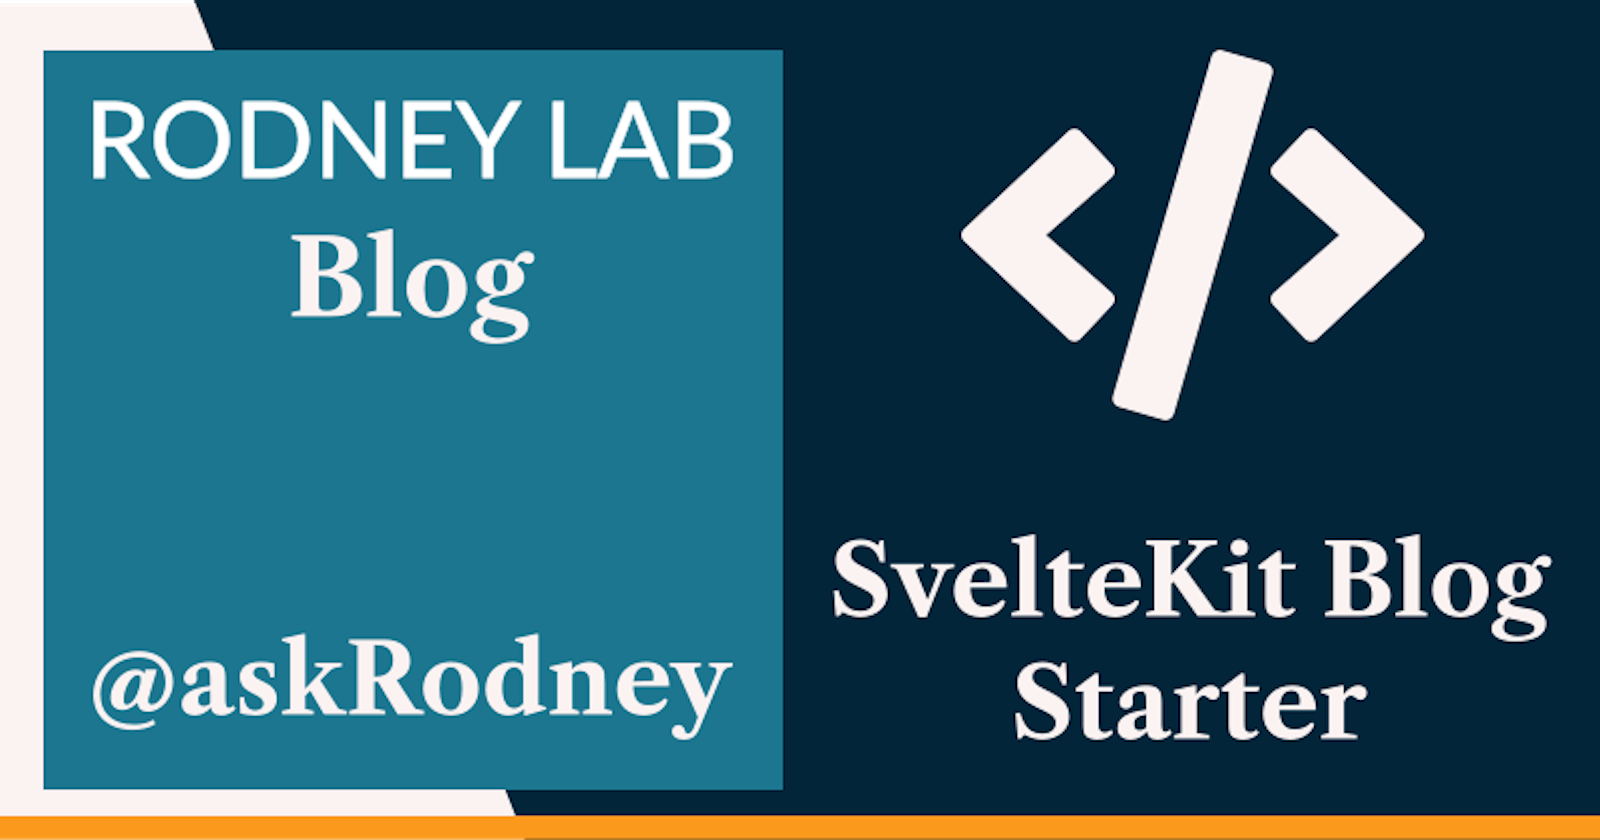 SvelteKit Blog Starter